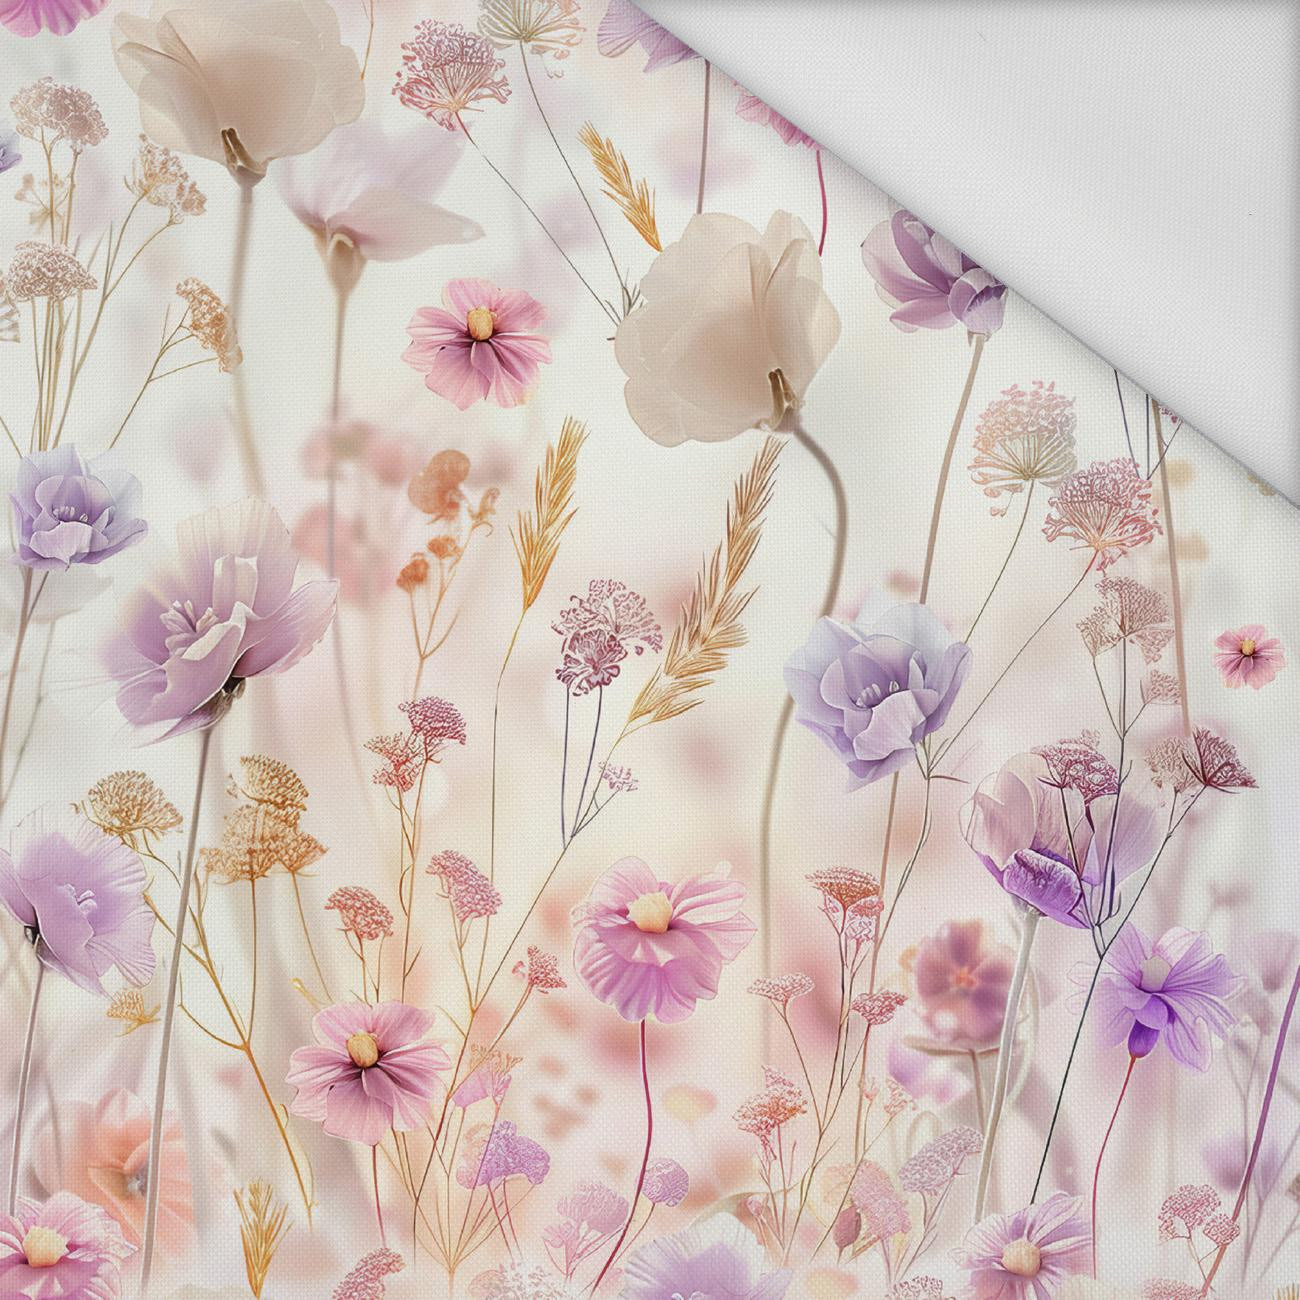 FLOWERS wz.10 - Waterproof woven fabric